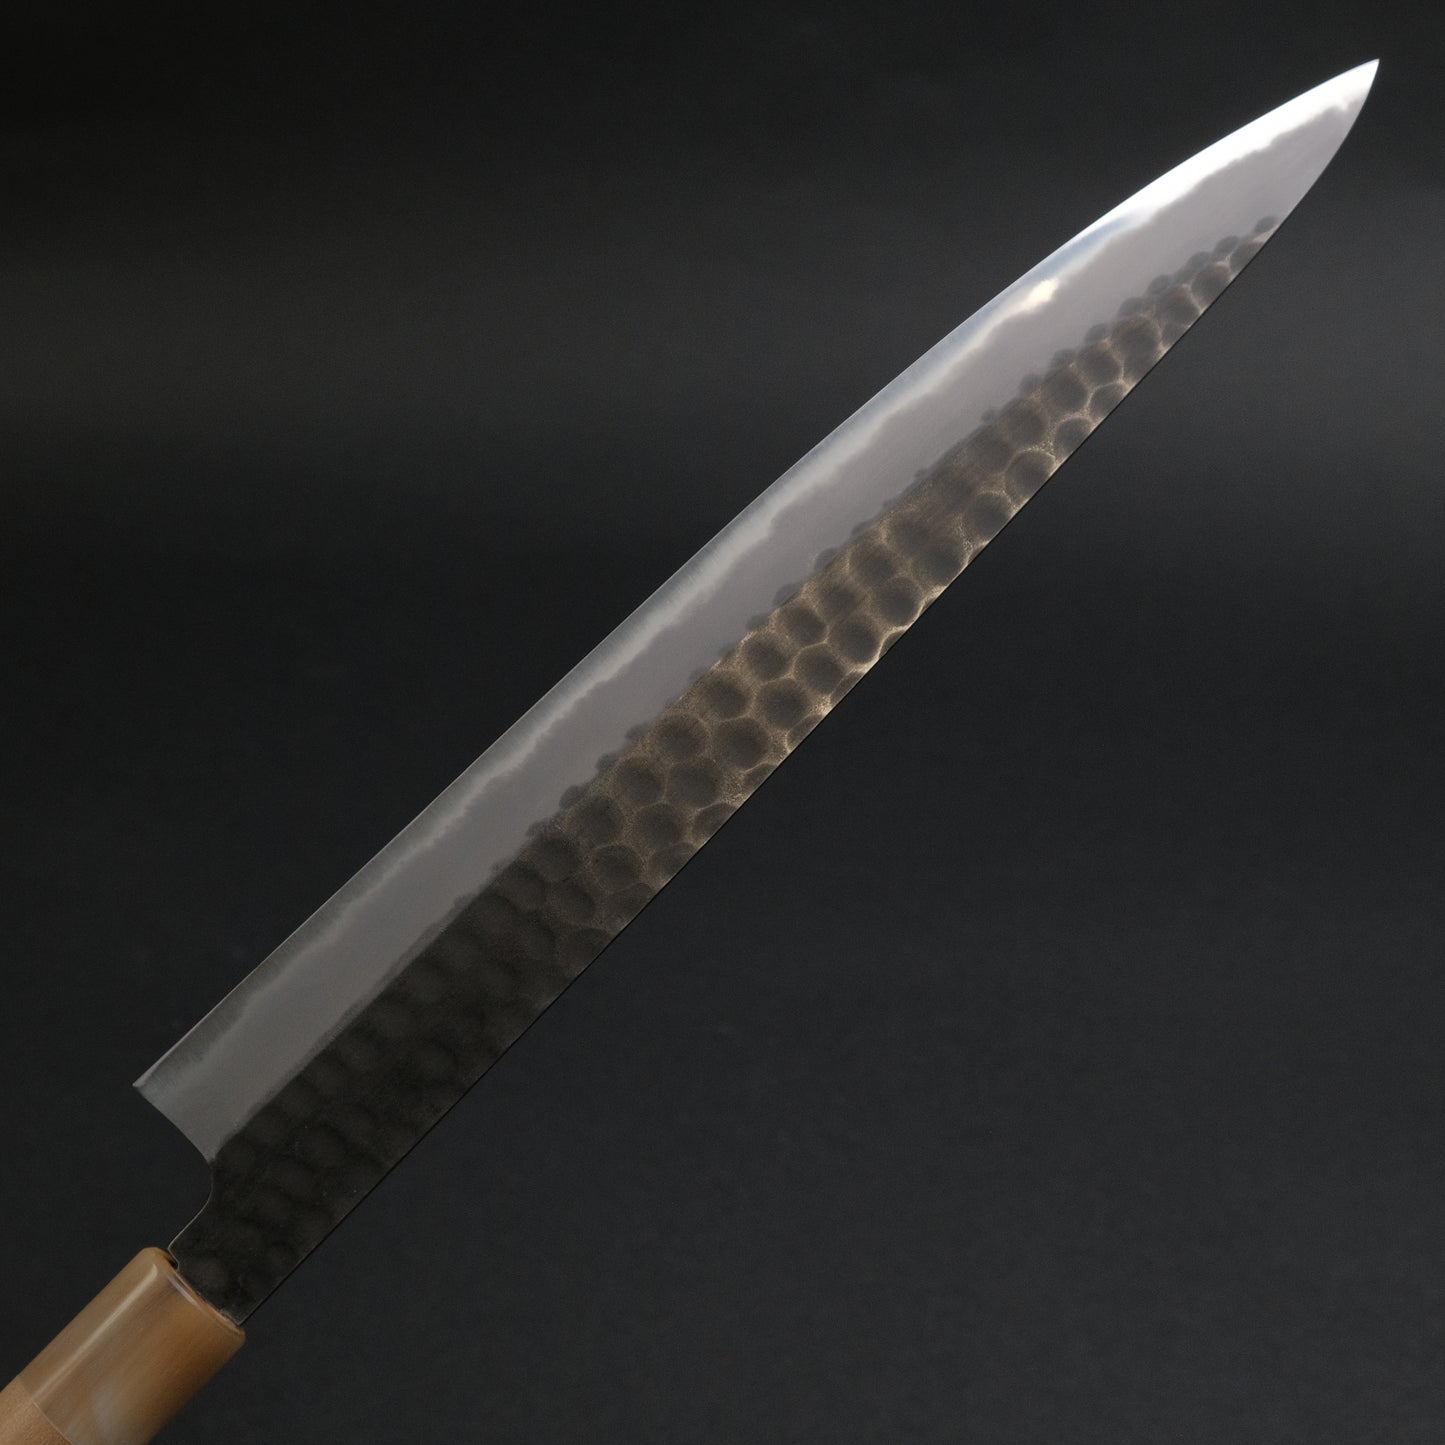 Ajikataya Tsuchime White #2 Sujihiki 270mm Ho Wood Handle (D-Shape)